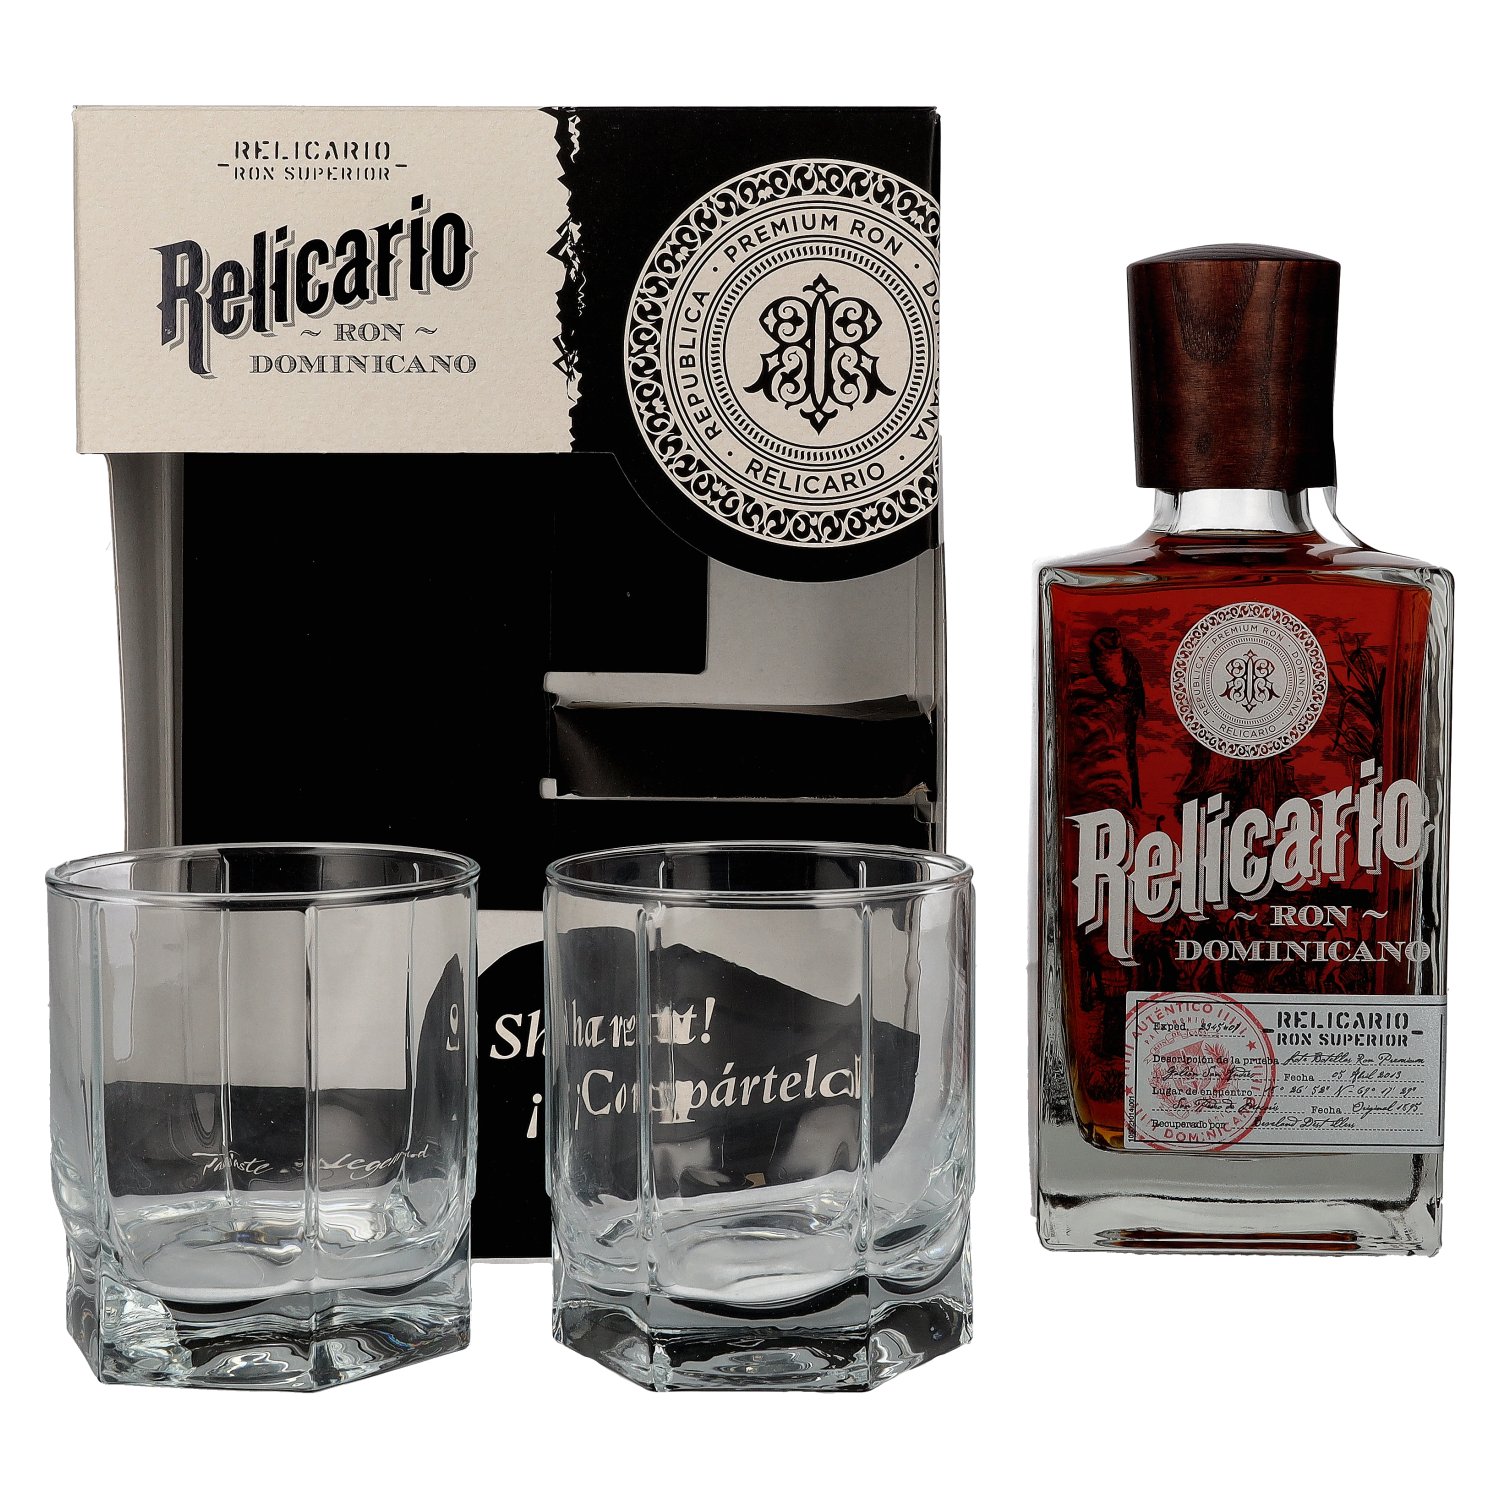 Relicario Ron Dominicano Superior 40% Vol. 0,7l in Giftbox with 2 glasses